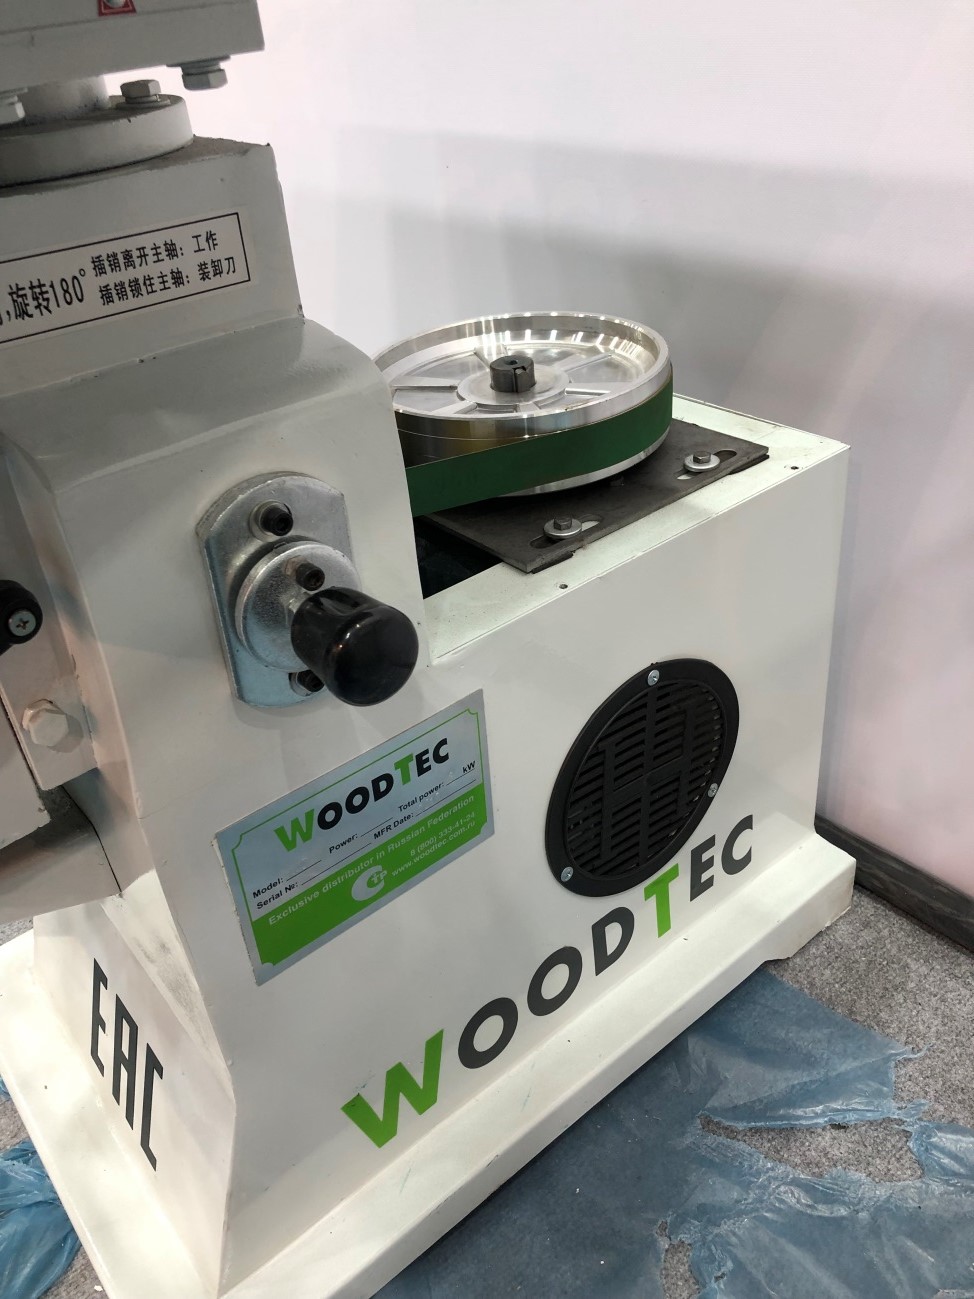 WoodTec M 40 ECO СТОПОР ШПИНДЕЛЯ  Для смены инструмента предусмотрен стопор шпинделя 